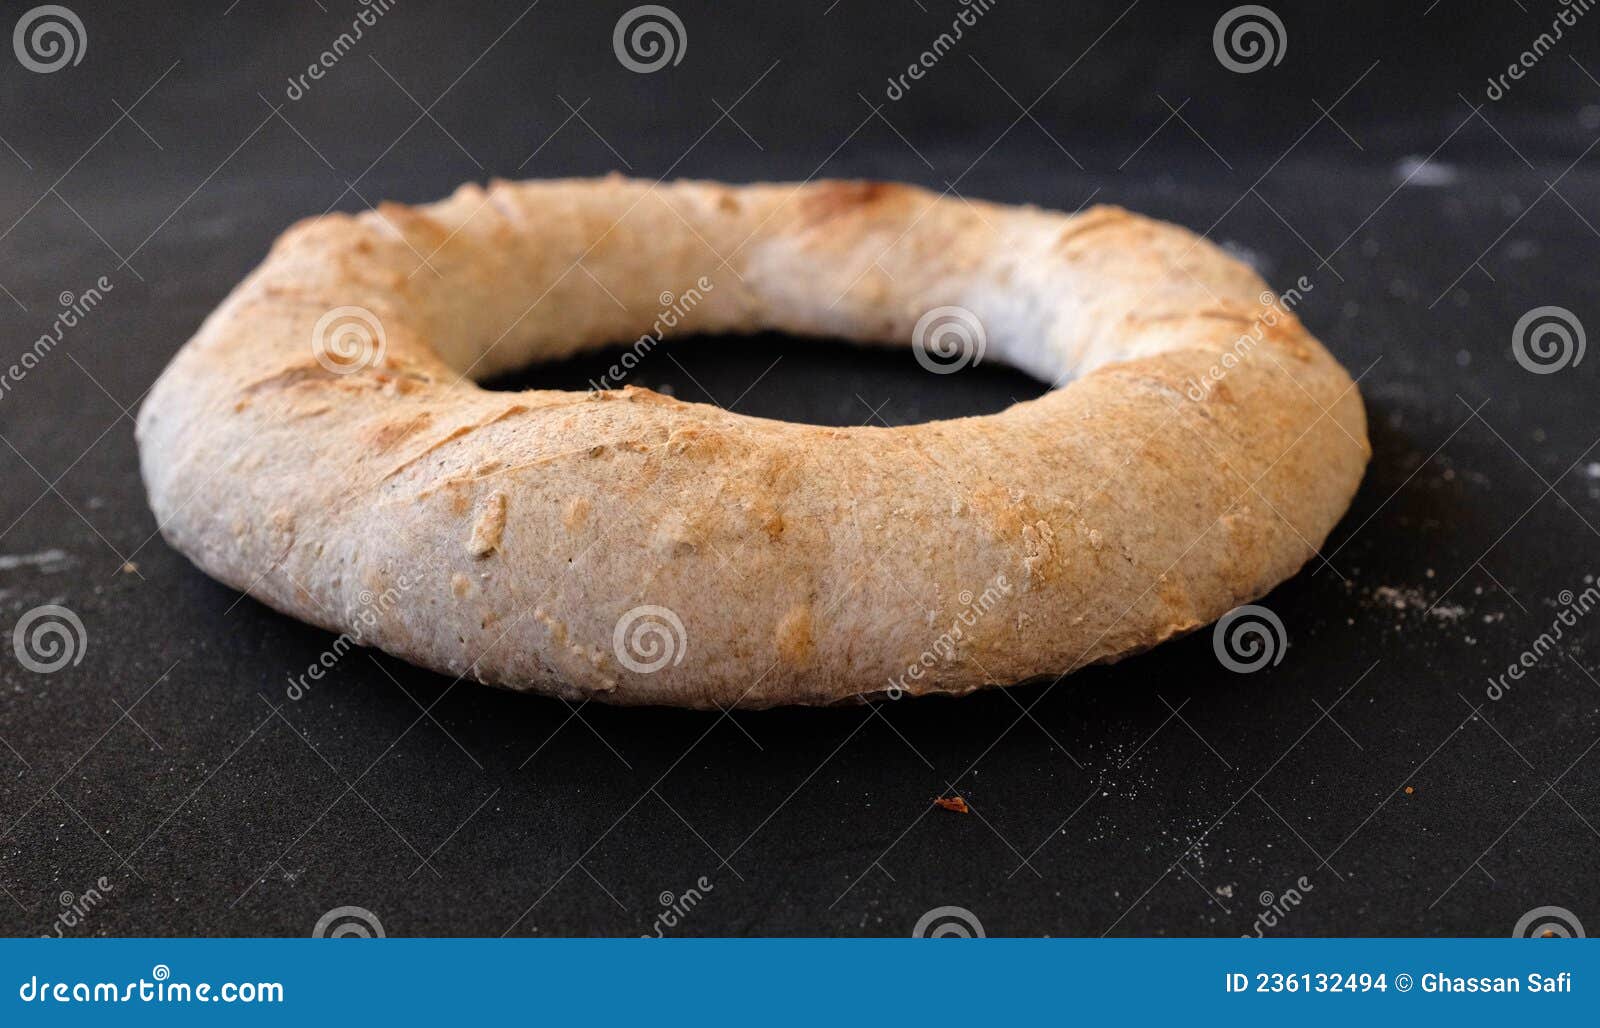 Bildagentur | mauritius images | Italian ring bread